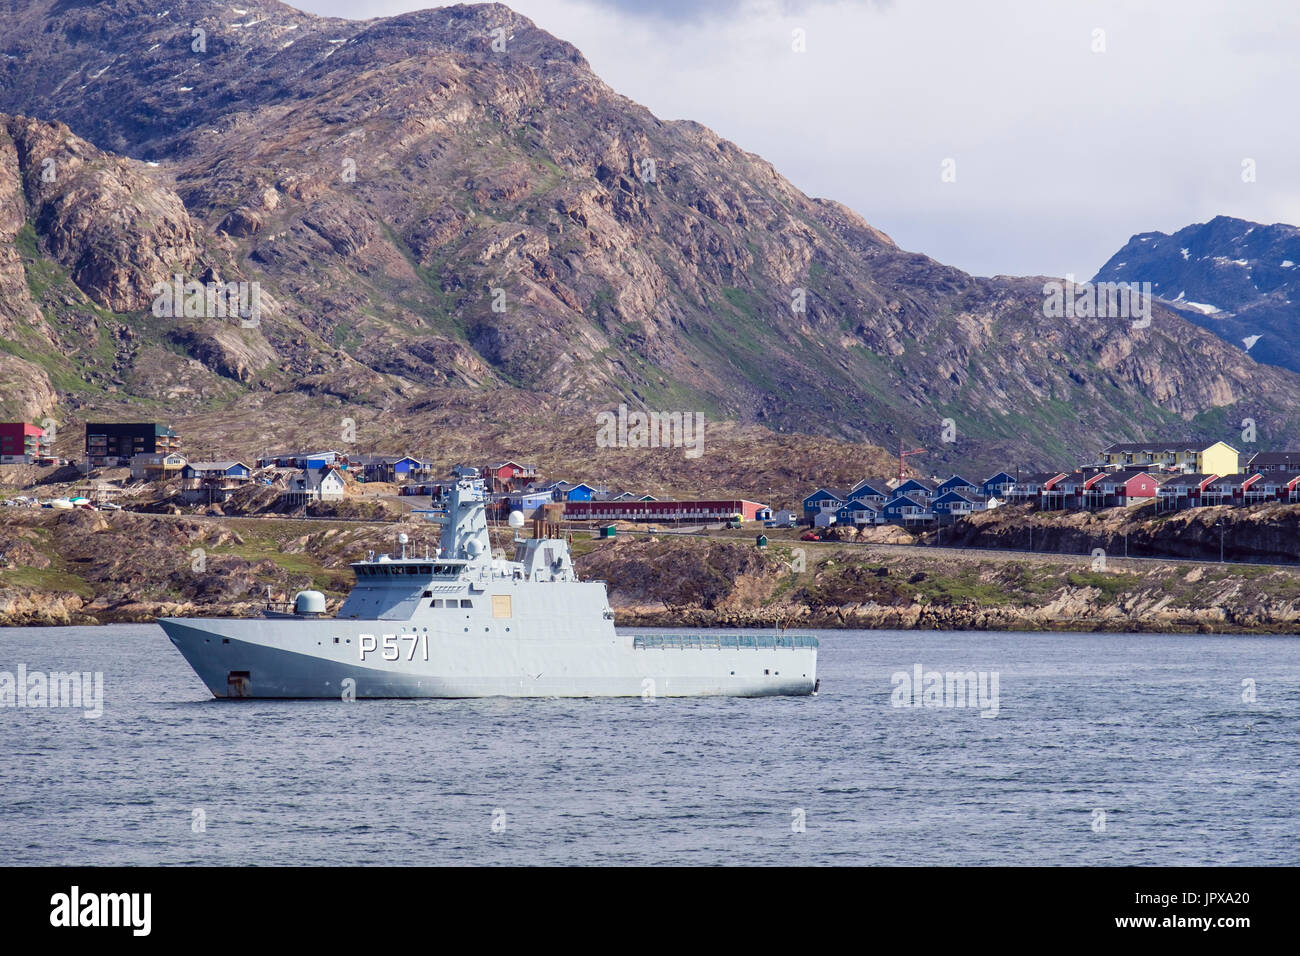 HDMS Ejnar Mikkelsen de patrouille de la Marine royale danoise navire en patrouille dans le détroit de Davis sur la côte ouest. Sisimiut, Groenland Ouest, Qeqqata Banque D'Images